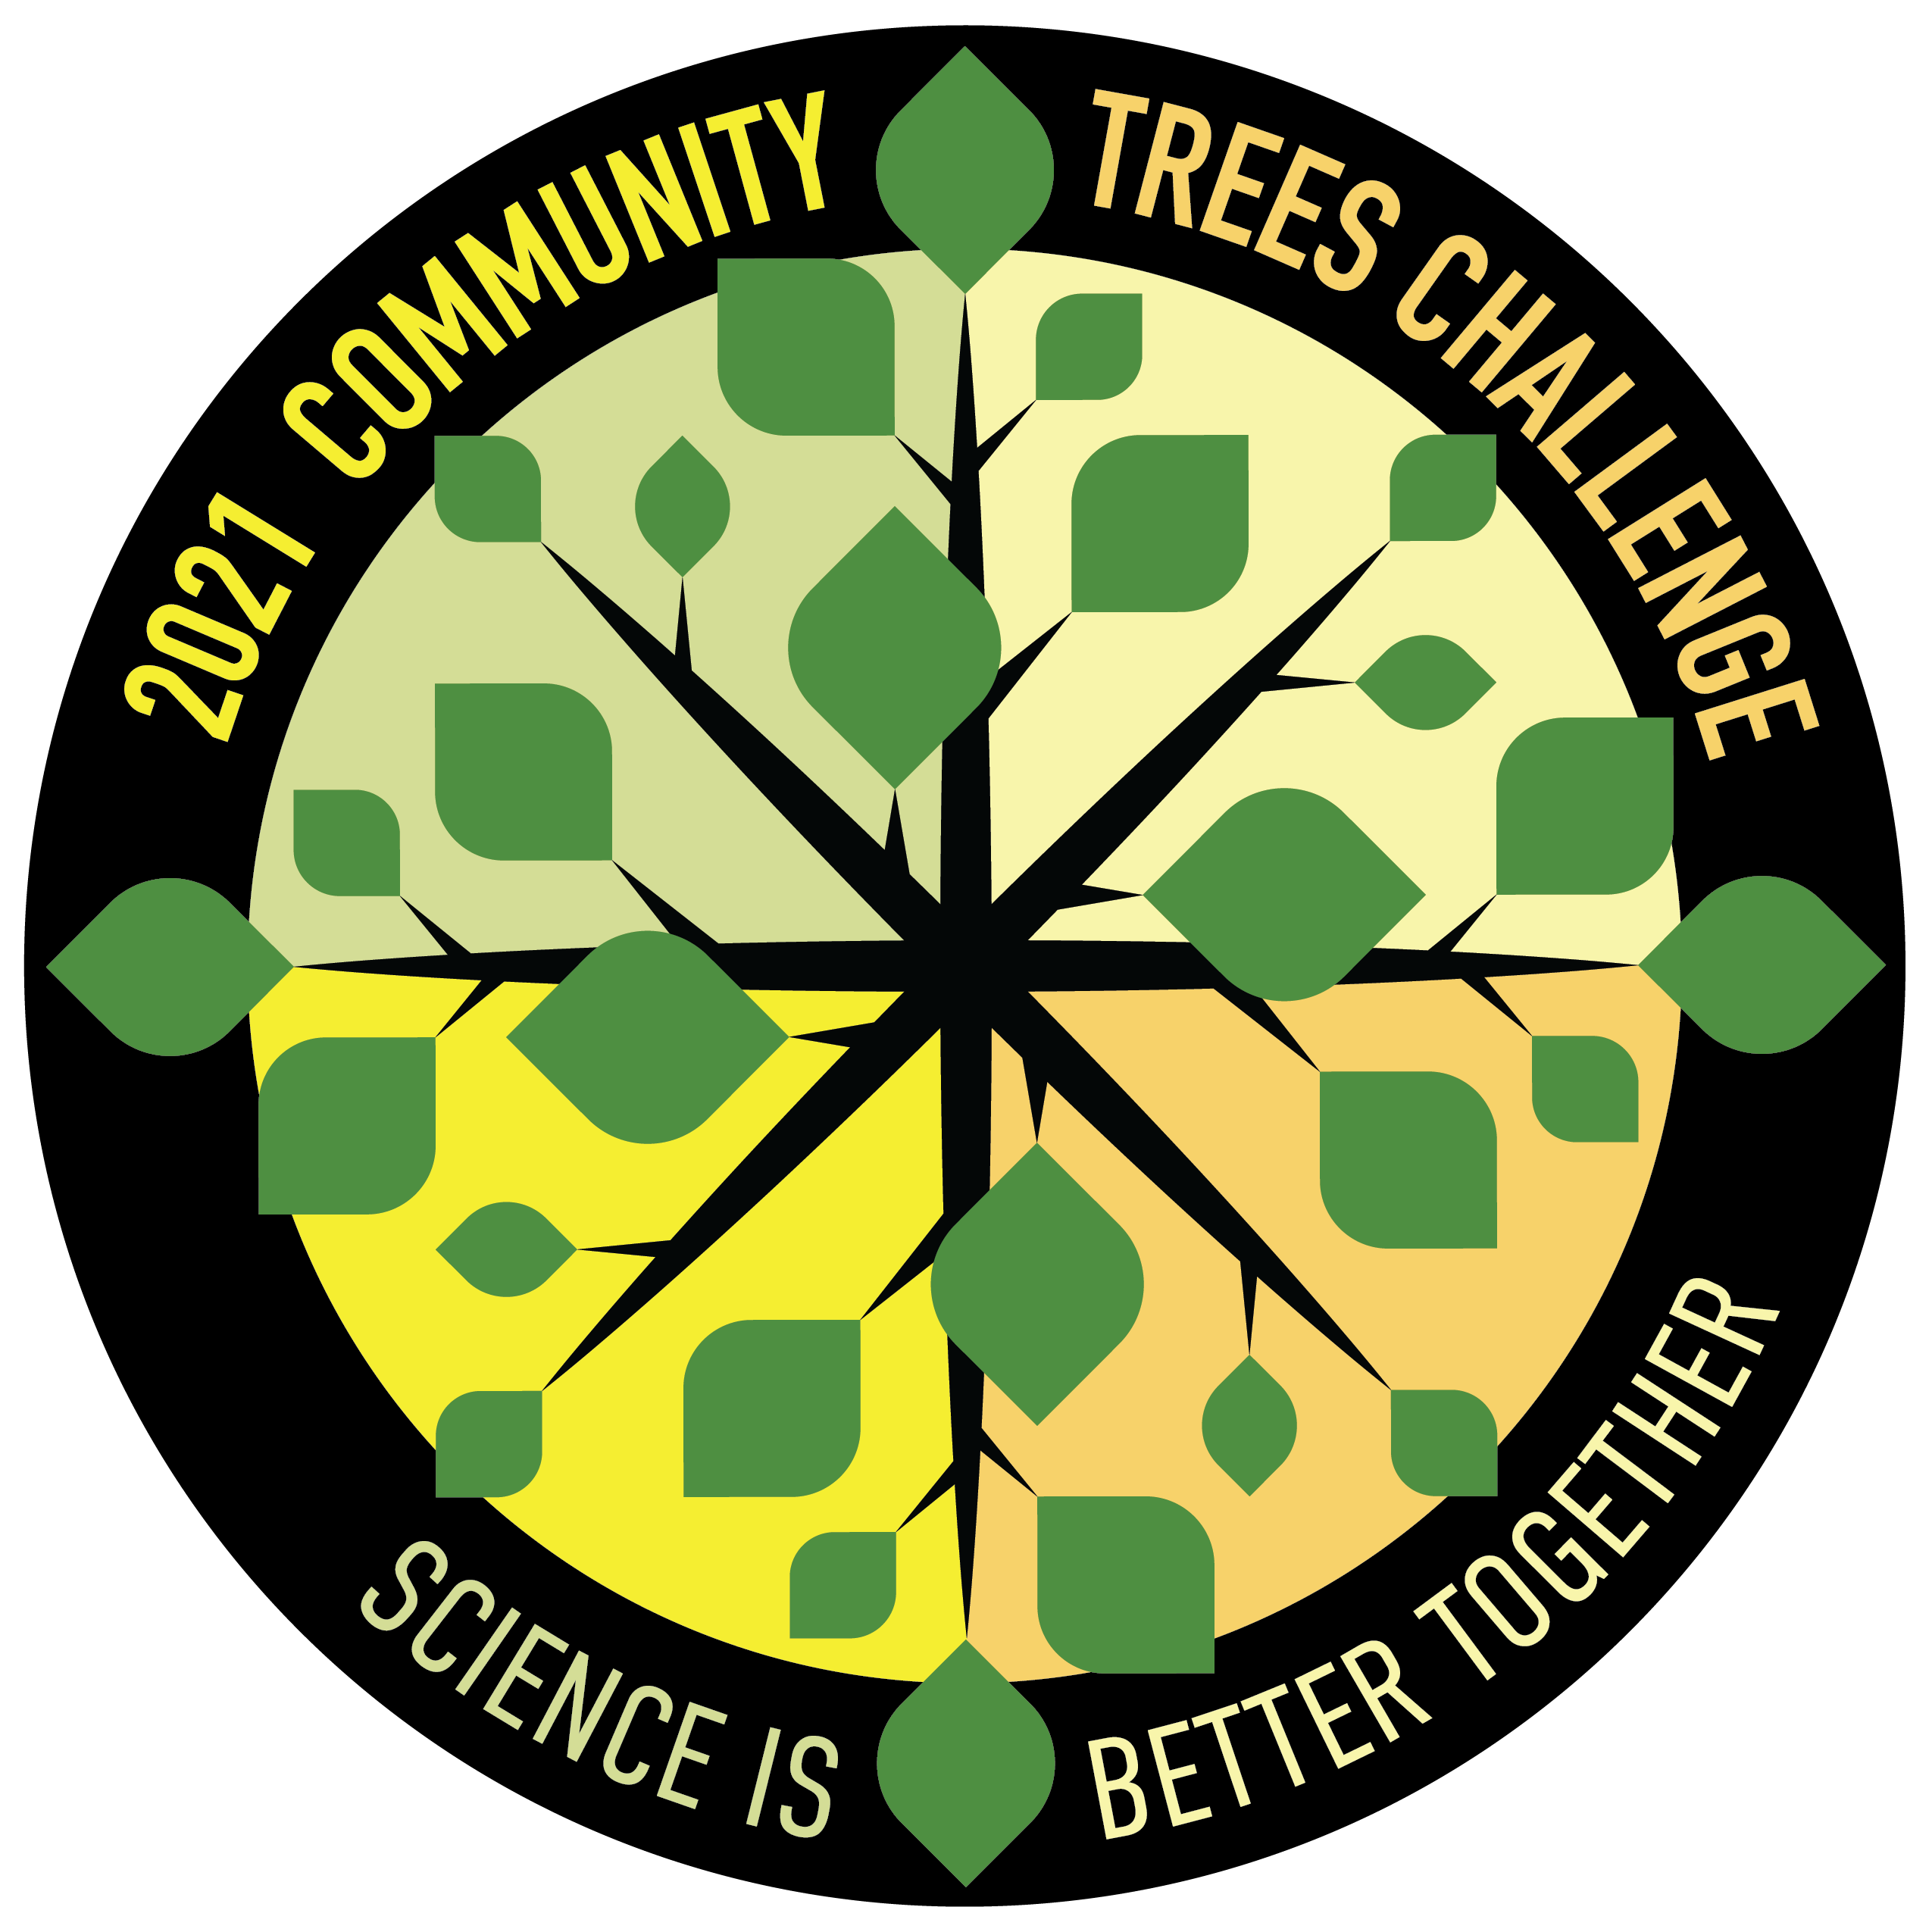 Trees Challenge logo